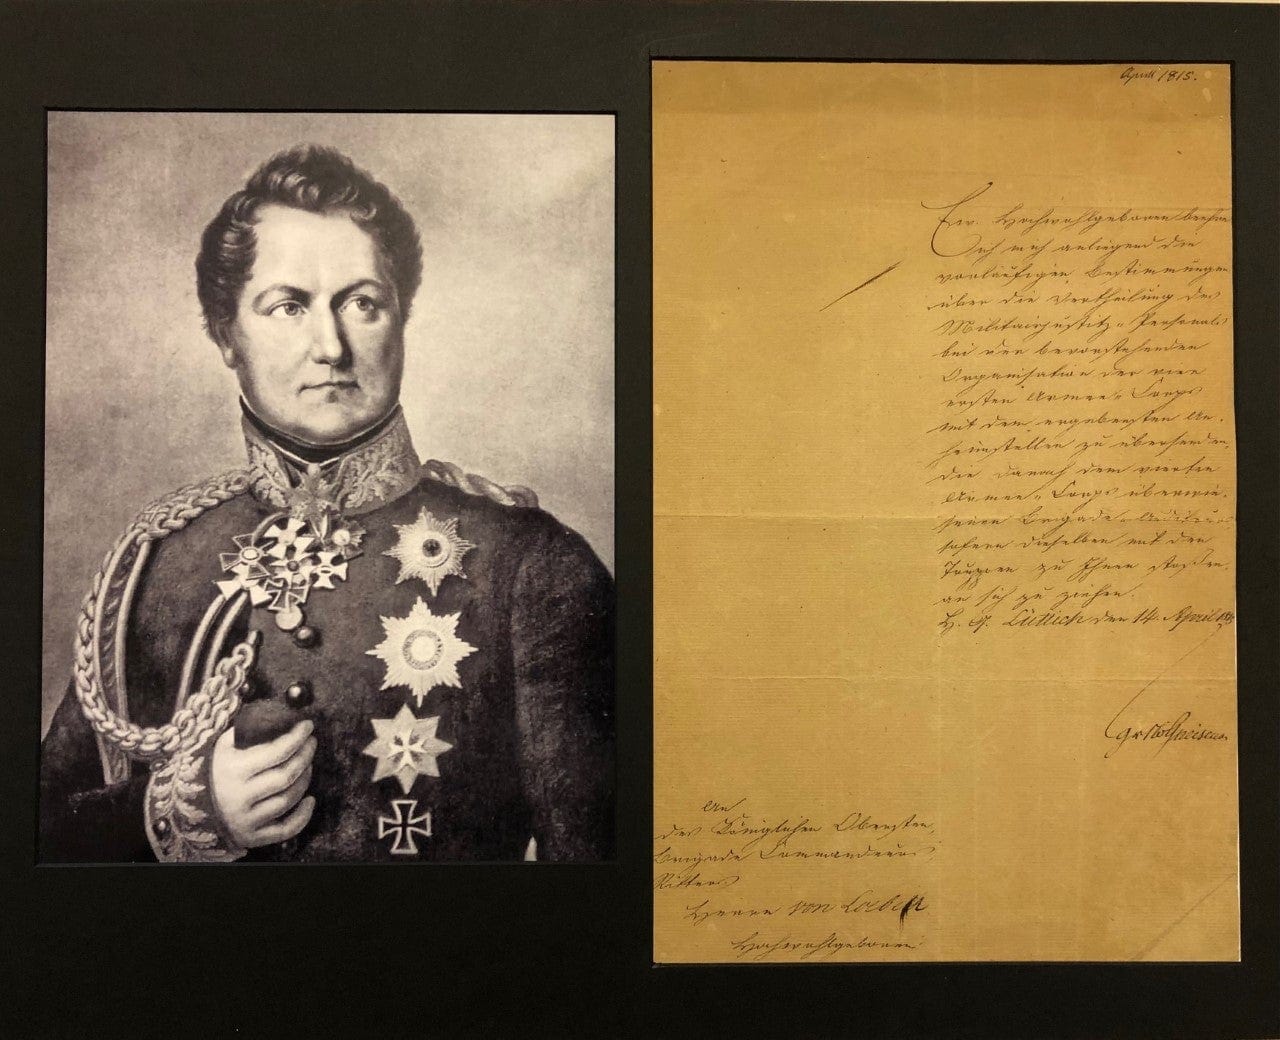 August Neidhardt von Gneisenau Autograph